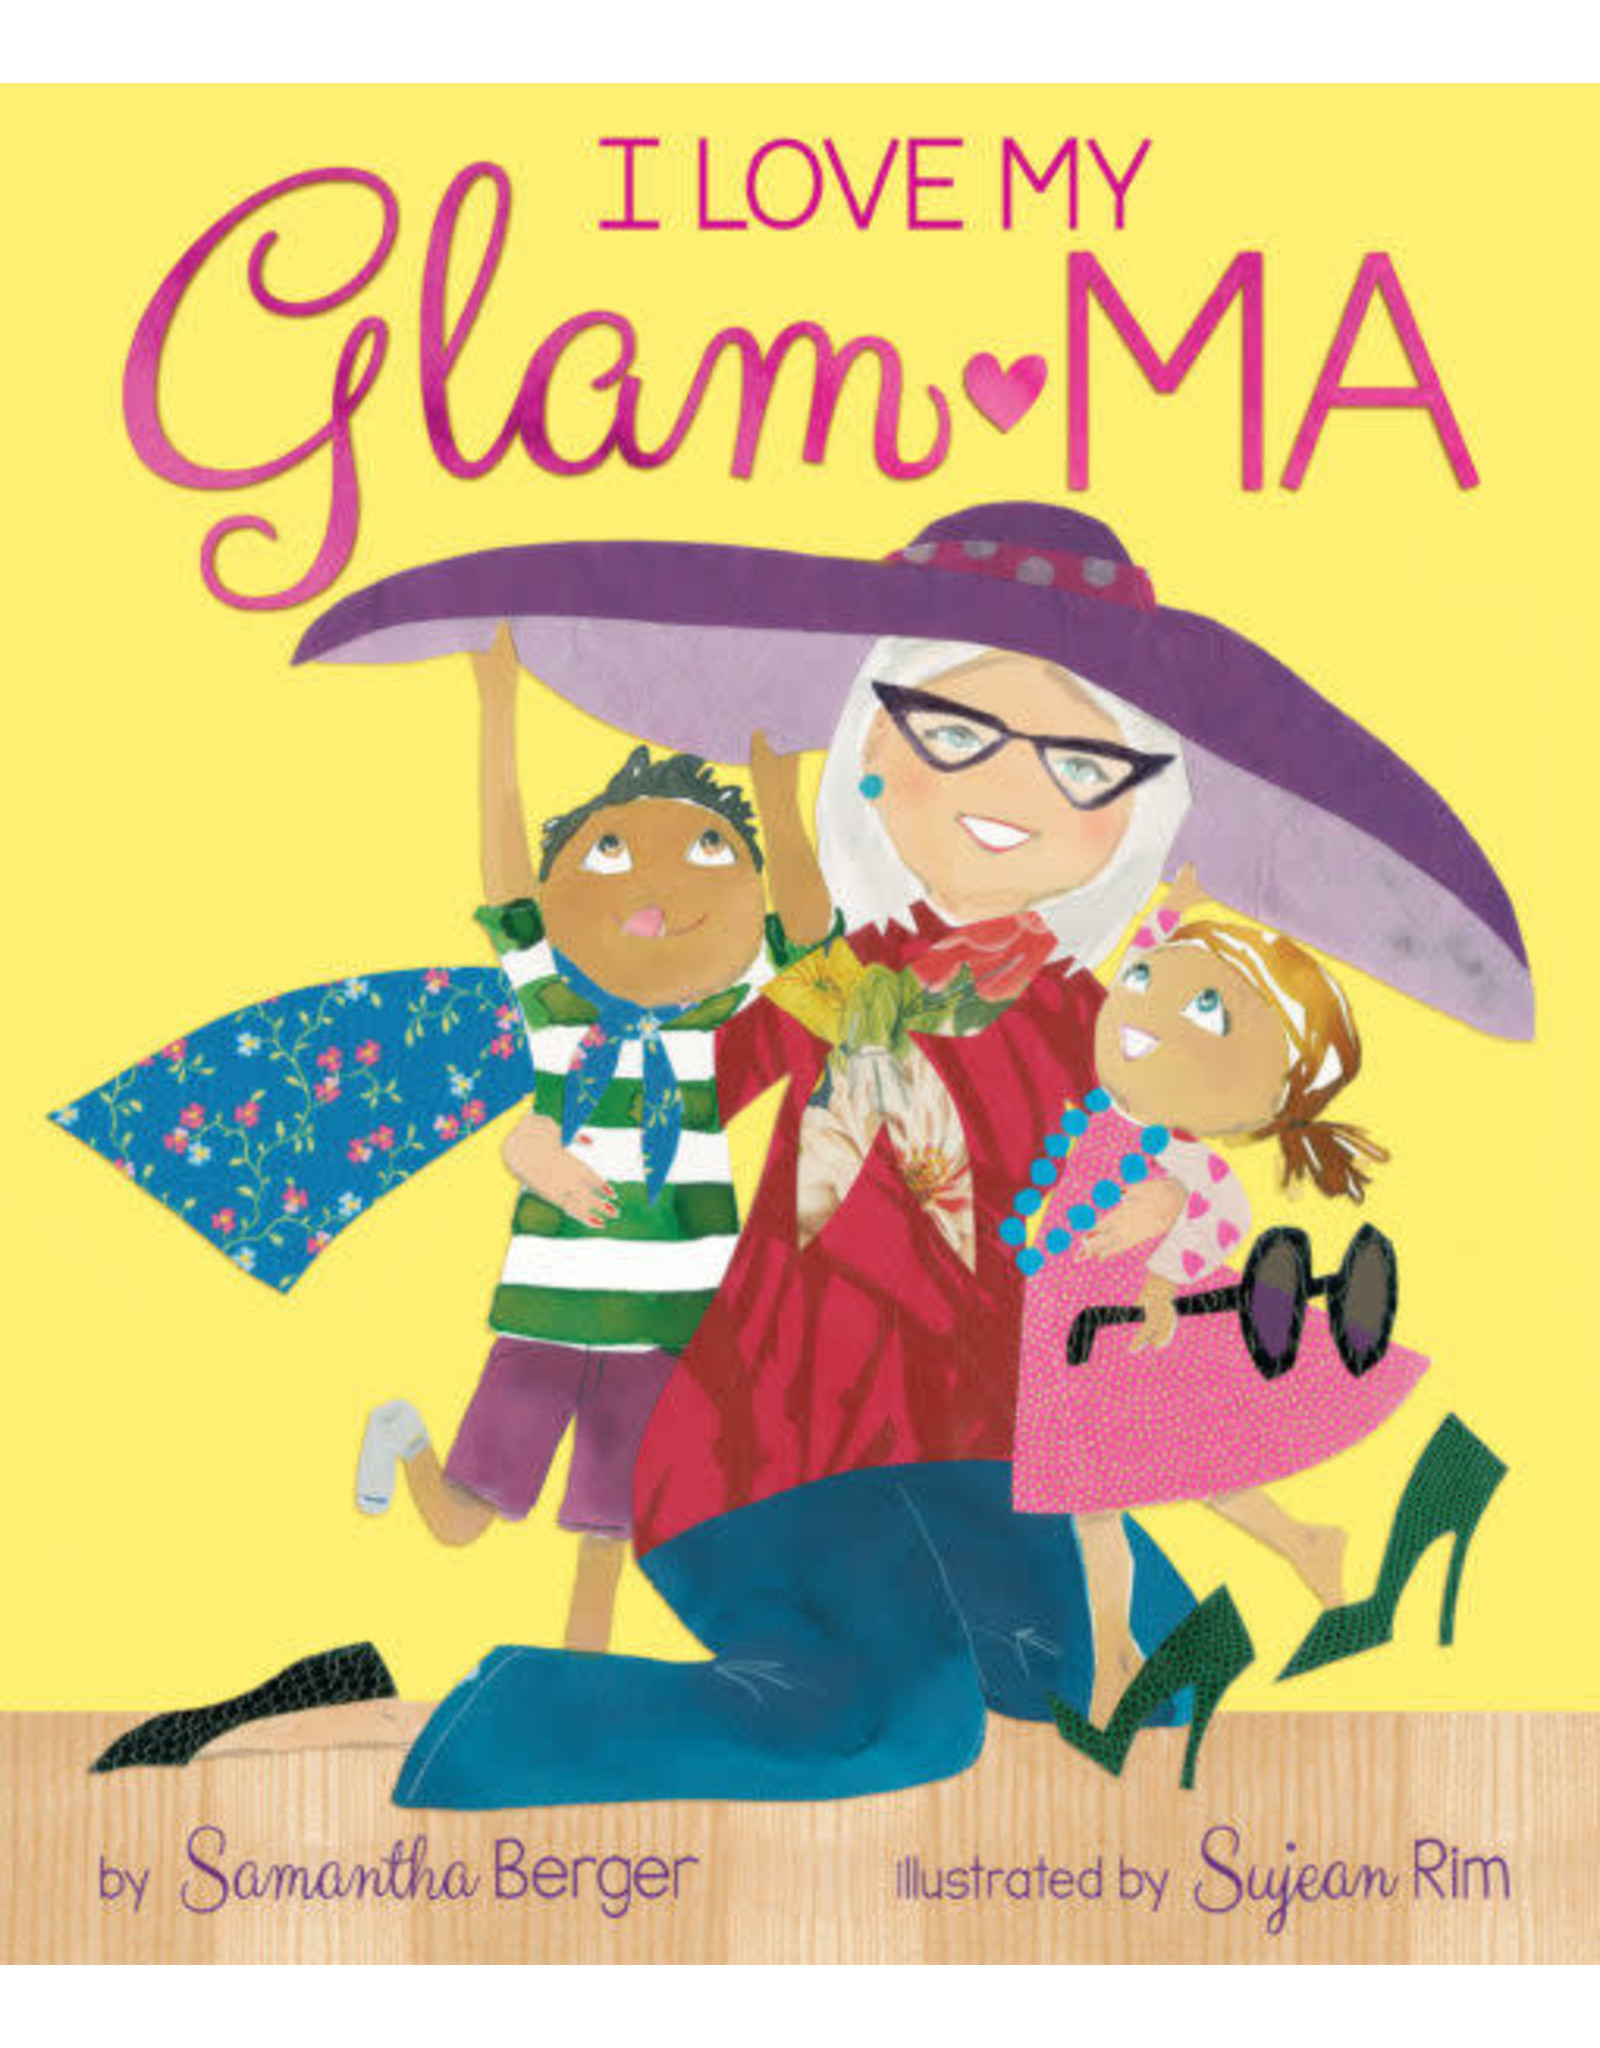 I Love My Glam-Ma